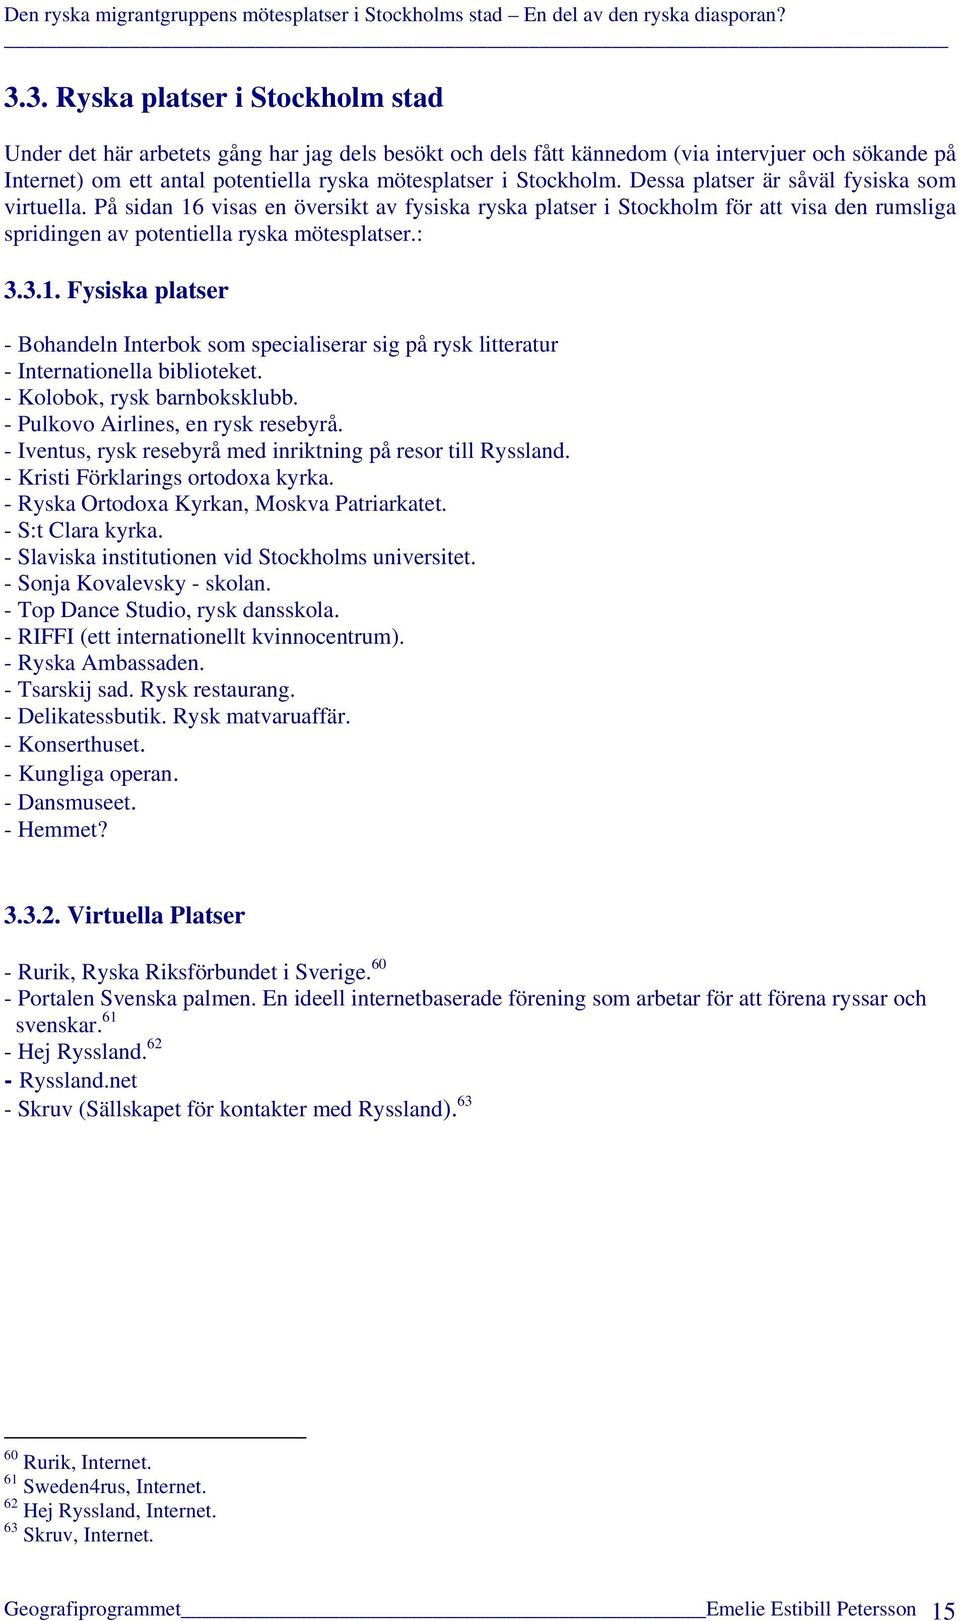 3.1. Fysiska platser - Bohandeln Interbok som specialiserar sig på rysk litteratur - Internationella biblioteket. - Kolobok, rysk barnboksklubb. - Pulkovo Airlines, en rysk resebyrå.